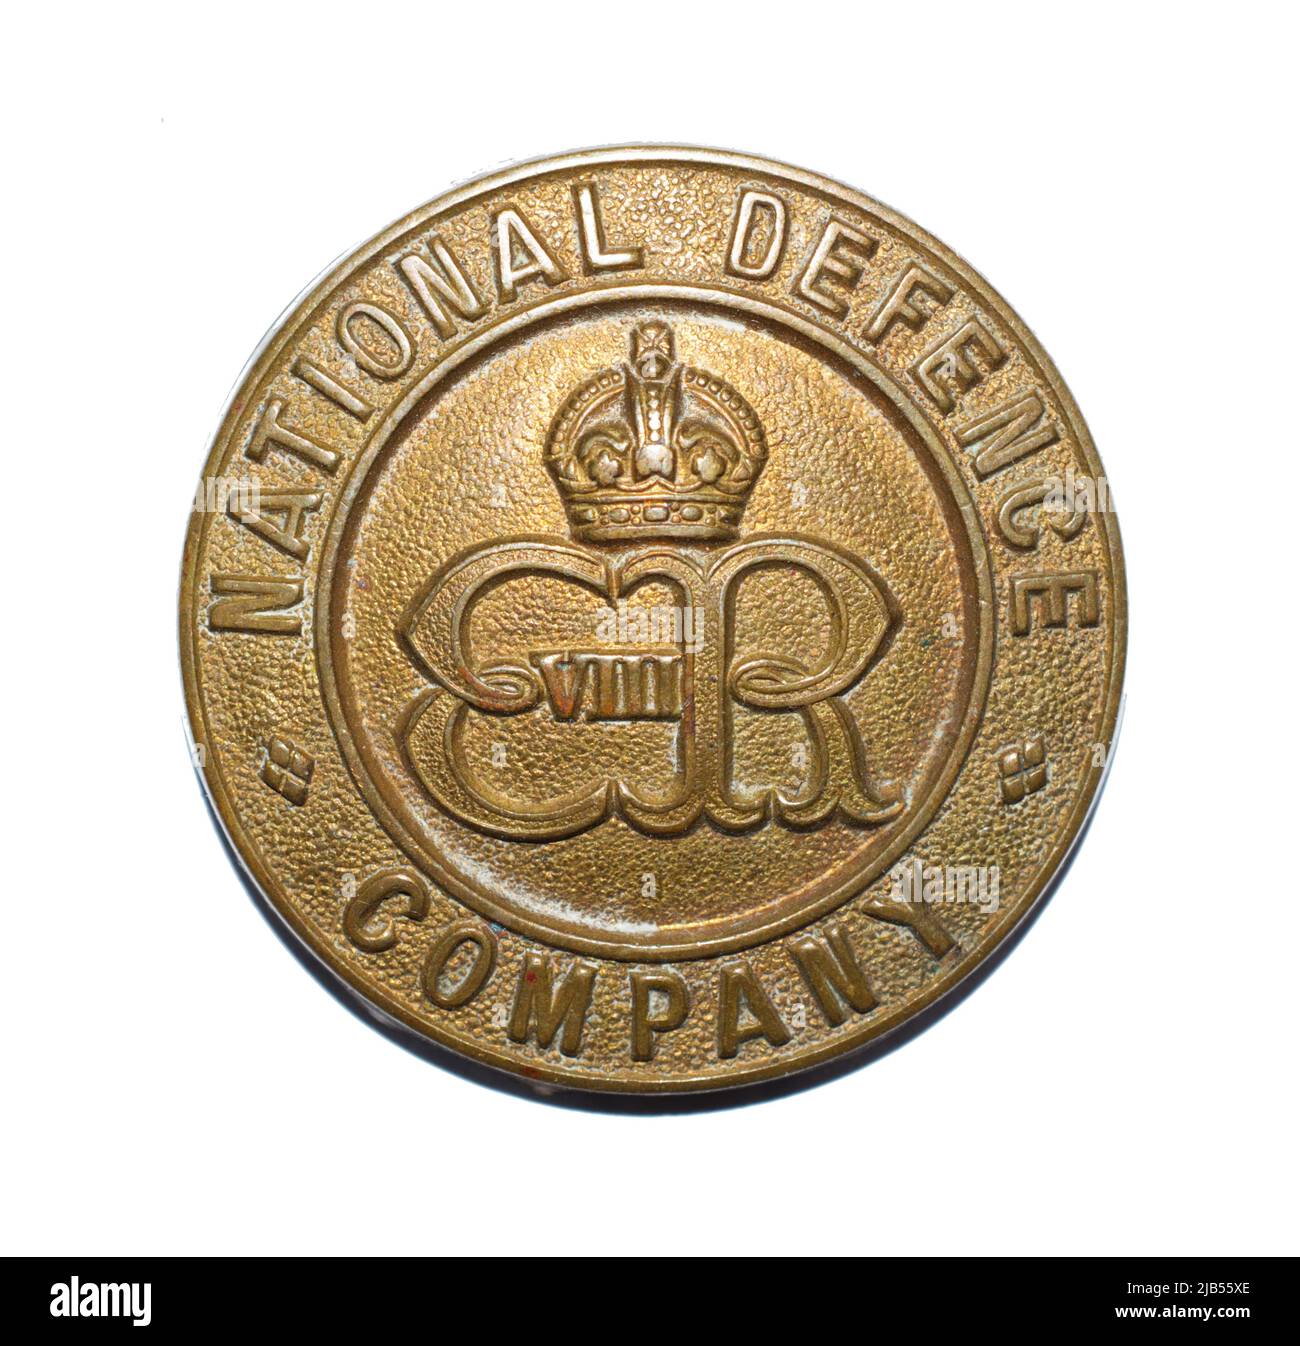 Ein Cap-Abzeichen der National Defense Company mit King Edward VIII-Cypher c. 1936. Stockfoto